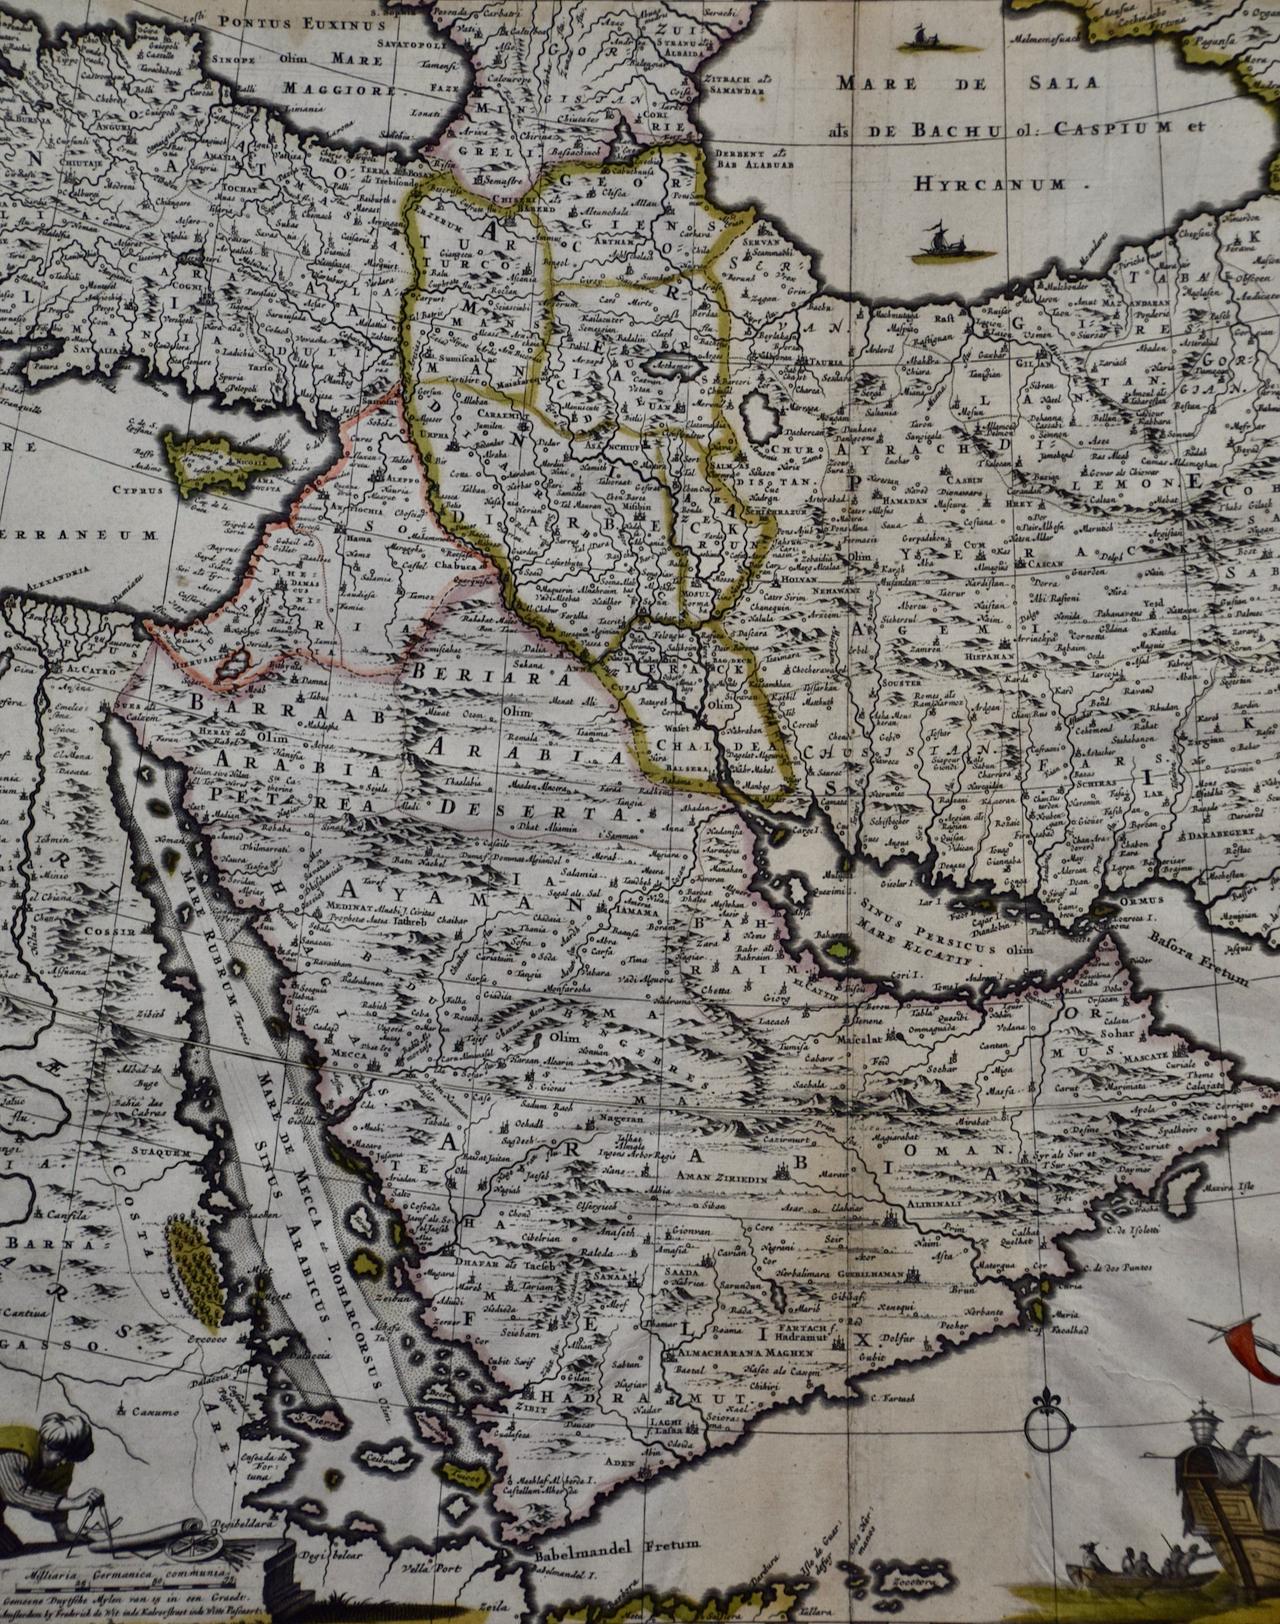 Cette carte colorée et détaillée du XVIIe siècle, réalisée sur une plaque de cuivre par Frederick De Wit, a été publiée à Amsterdam entre 1666 et 1690. Elle représente la mer Caspienne et des parties de la mer Noire, de la mer Rouge, de la mer